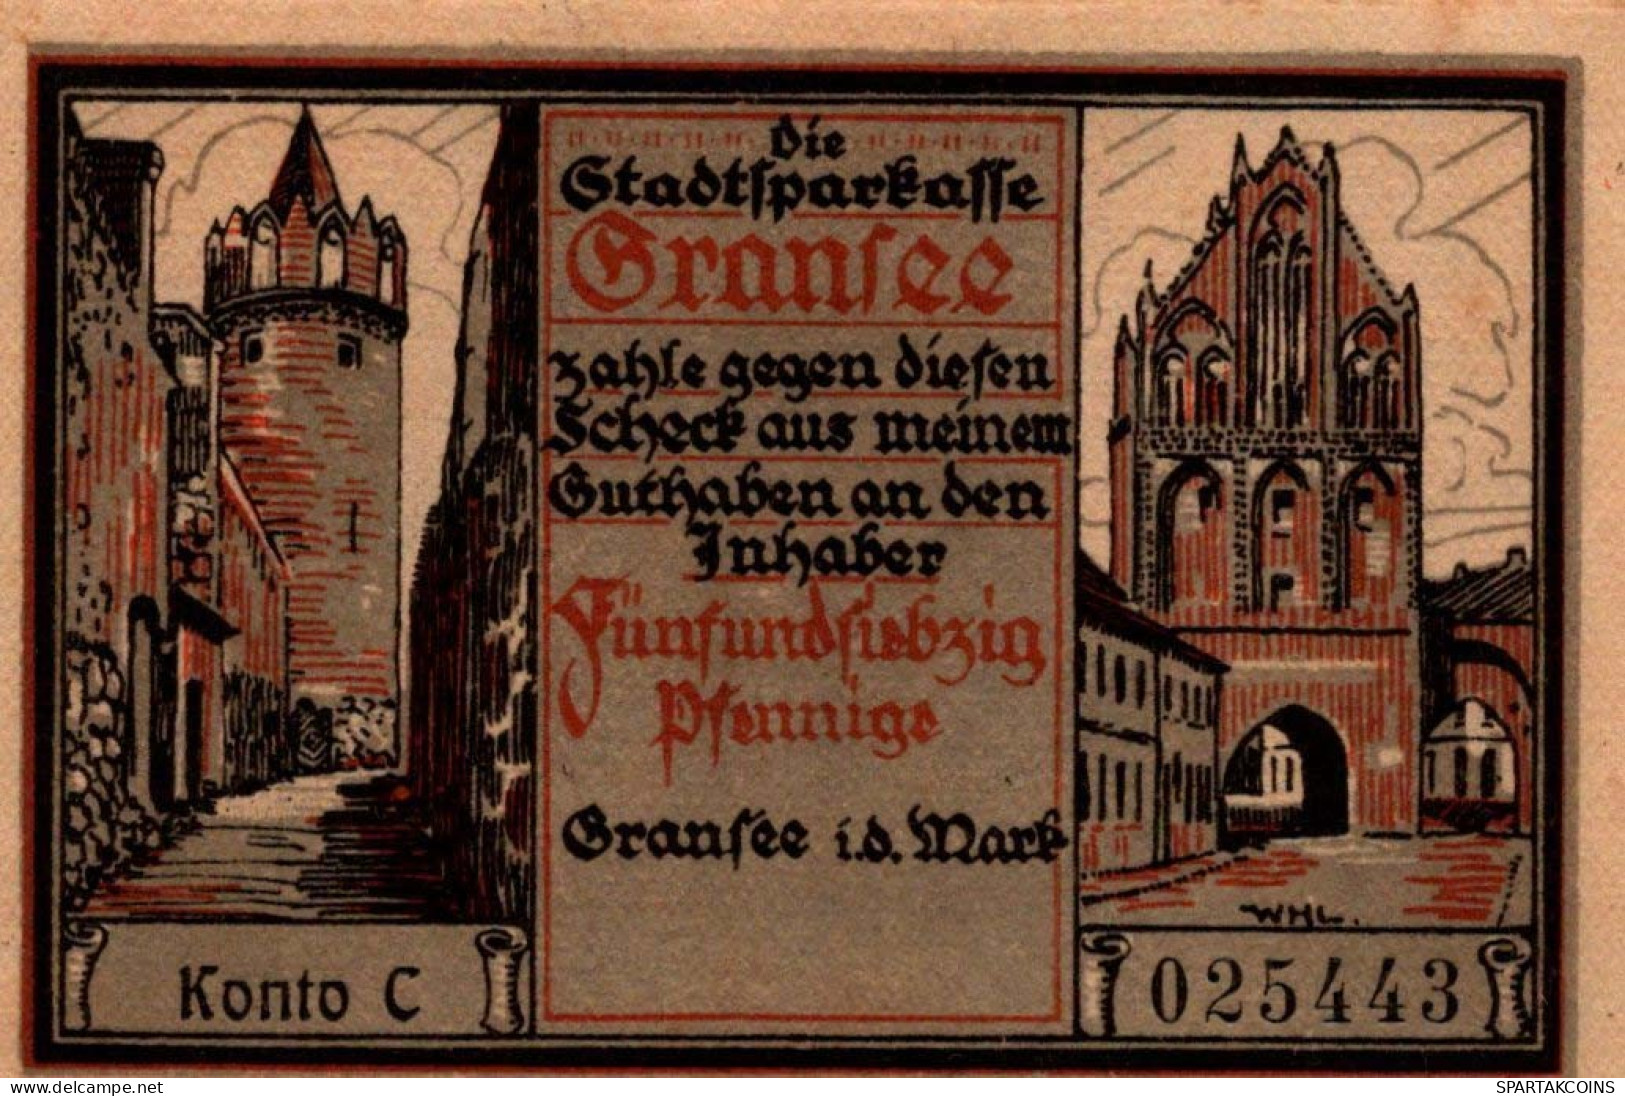 75 PFENNIG 1921 Stadt GRANSEE Brandenburg UNC DEUTSCHLAND Notgeld #PD013 - [11] Emissions Locales